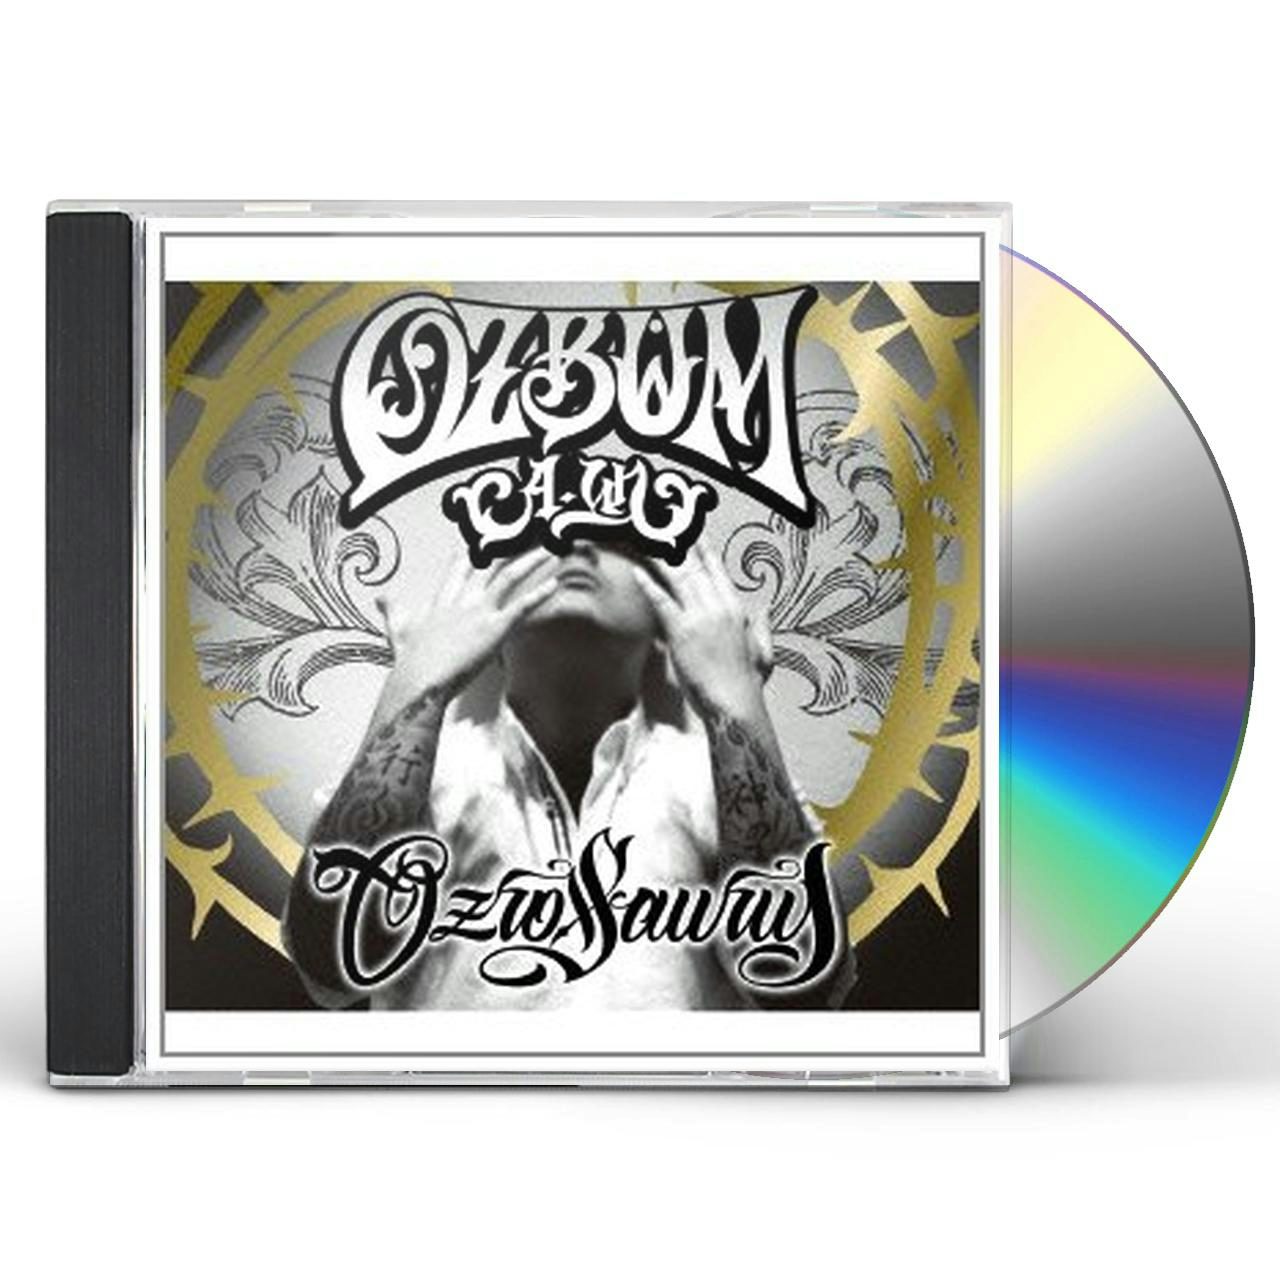 OZROSAURUS OZBUN A UN CD